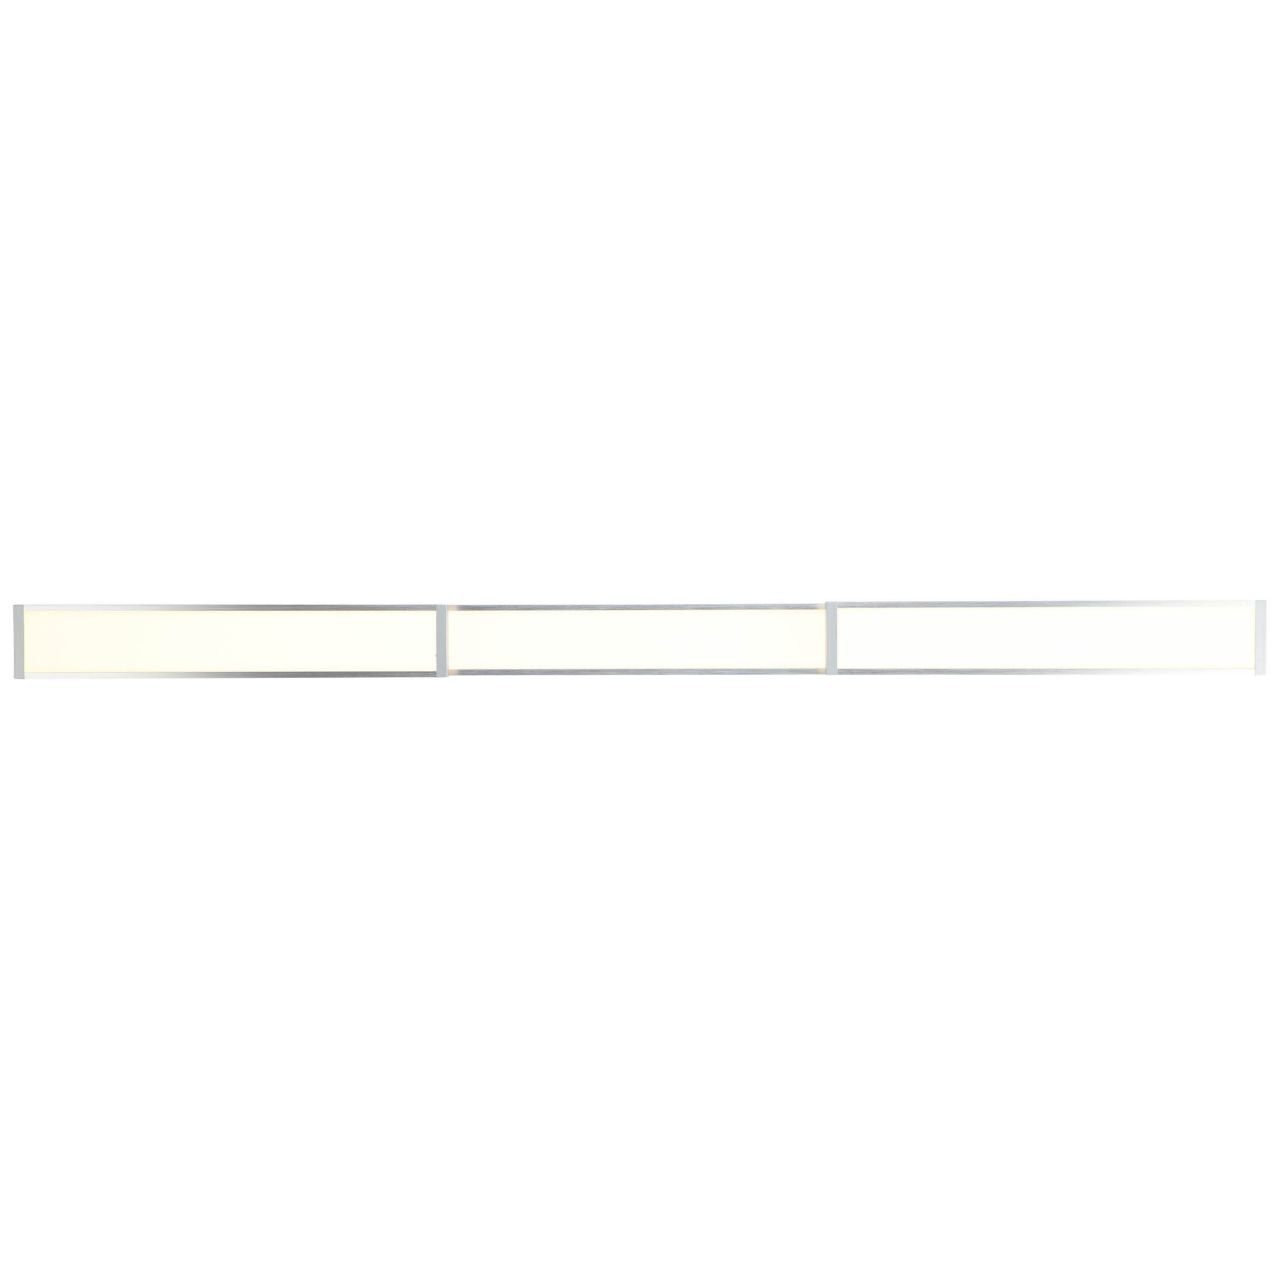 alu/weiß Brilliant easyDim LED 1x Entrance 3000K, 116x7cm Aufbauleuchte Deckenaufbau-Paneel 3 Lampe Entrance,